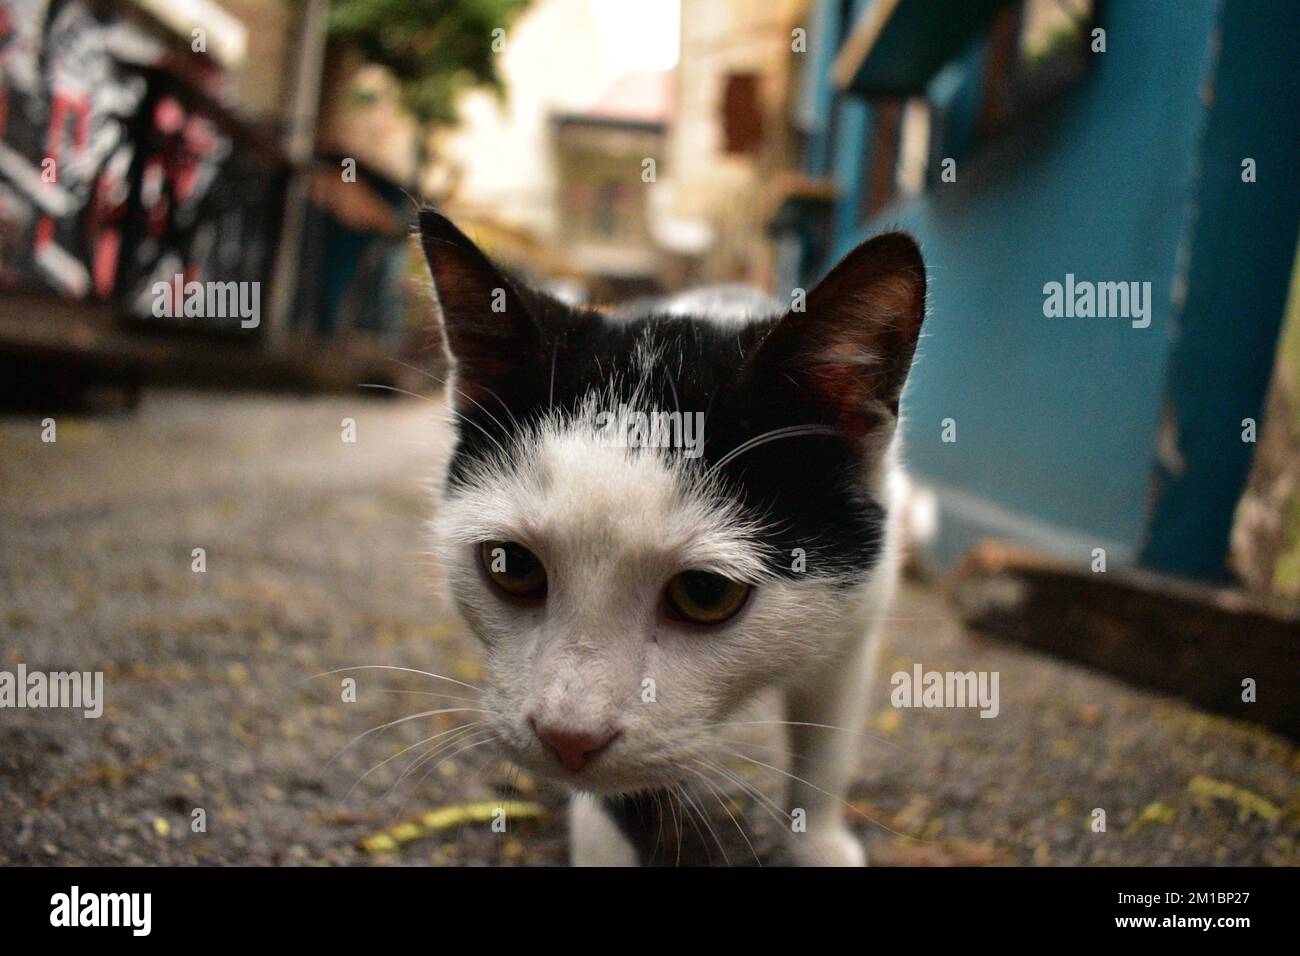 Schwarz-weiße Katze im Nahaufnahme Stockfotografie - Alamy